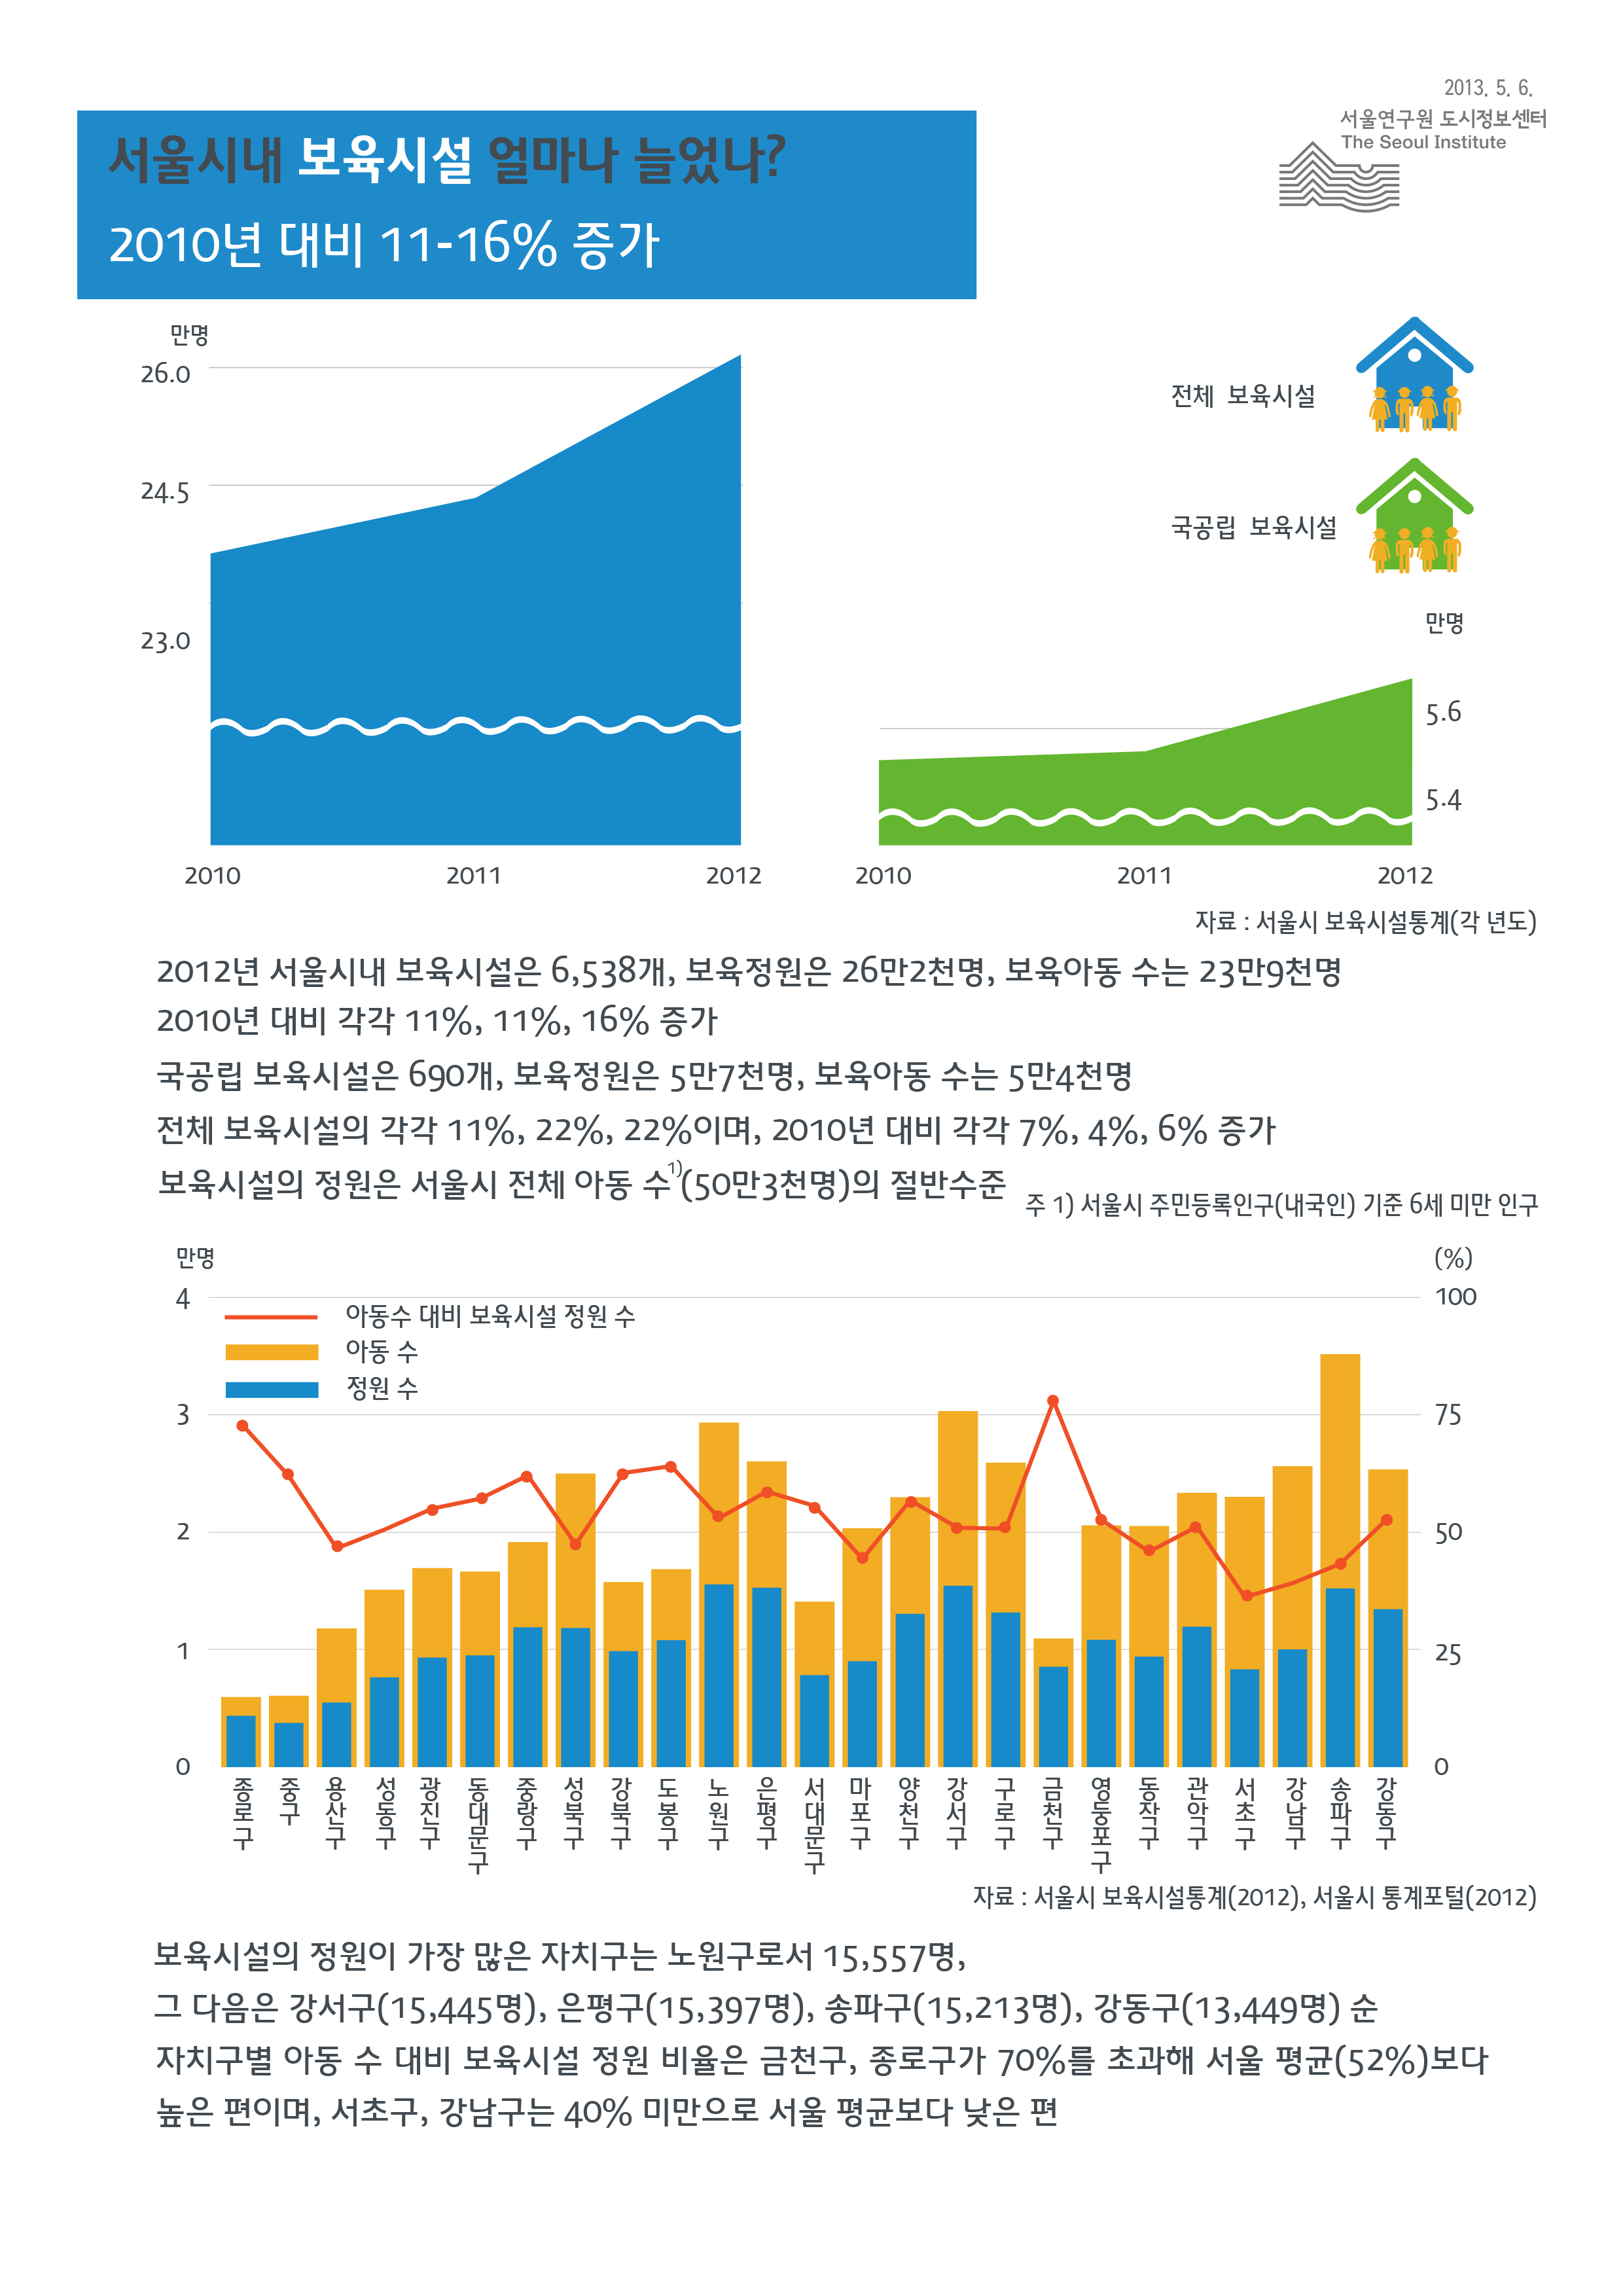 서울시내 보육시설은 얼마나 늘었나? 서울인포그래픽스 제32호 2013년 5월 6일 2010년 대비 11-16%증가함으로 정리될 수 있습니다. 인포그래픽으로 제공되는 그래픽은 하단에 표로 자세히 제공됩니다. 